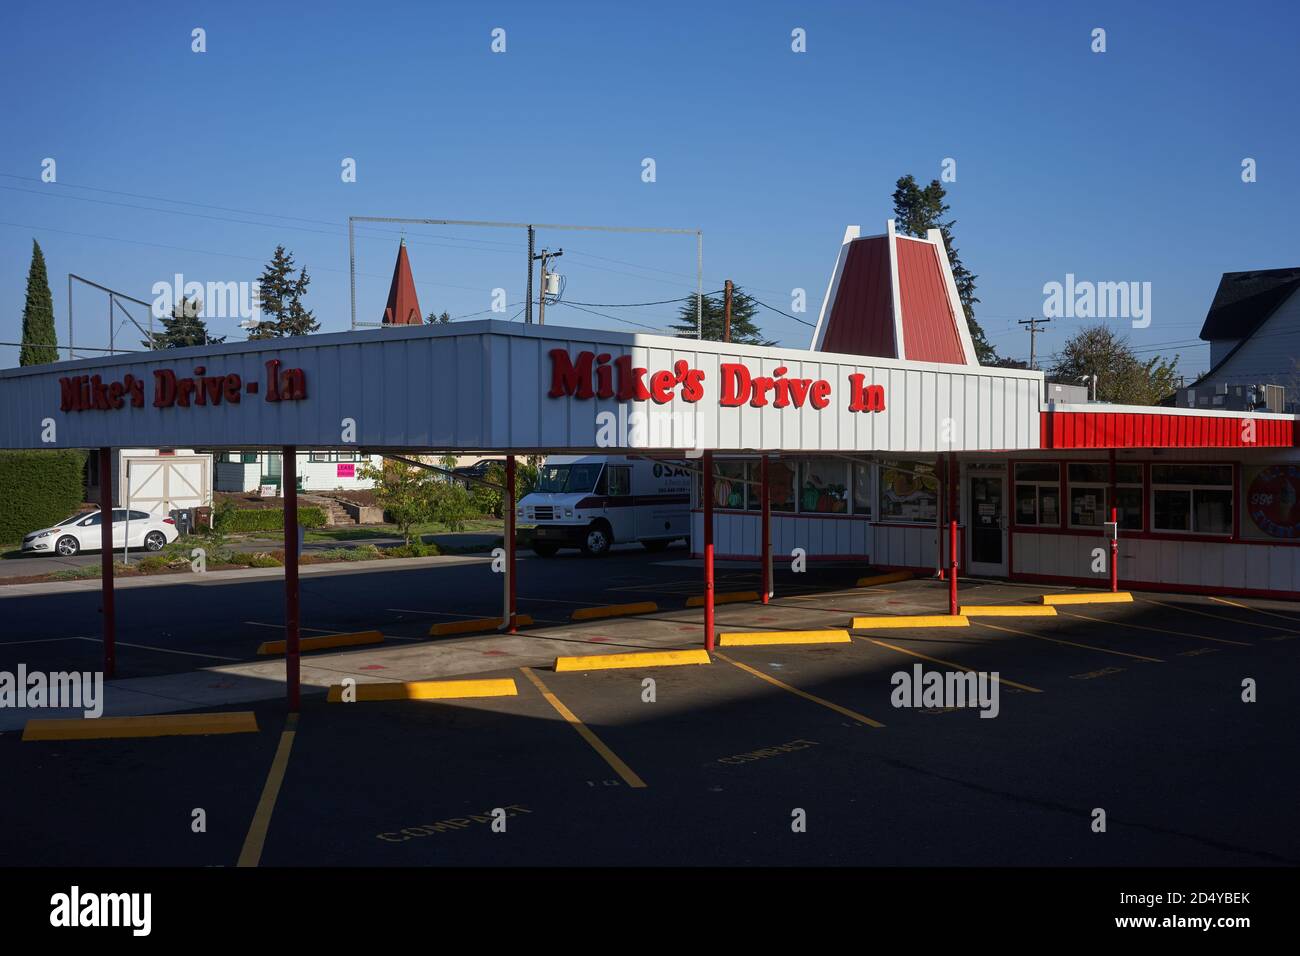 Das Mike's Drive-in Restaurant in Oregon City, ein Old-School-Drive-in mit Retro-Atmosphäre, in dem Burger, Pommes frites und Shakes in dezem Stil serviert werden. Stockfoto